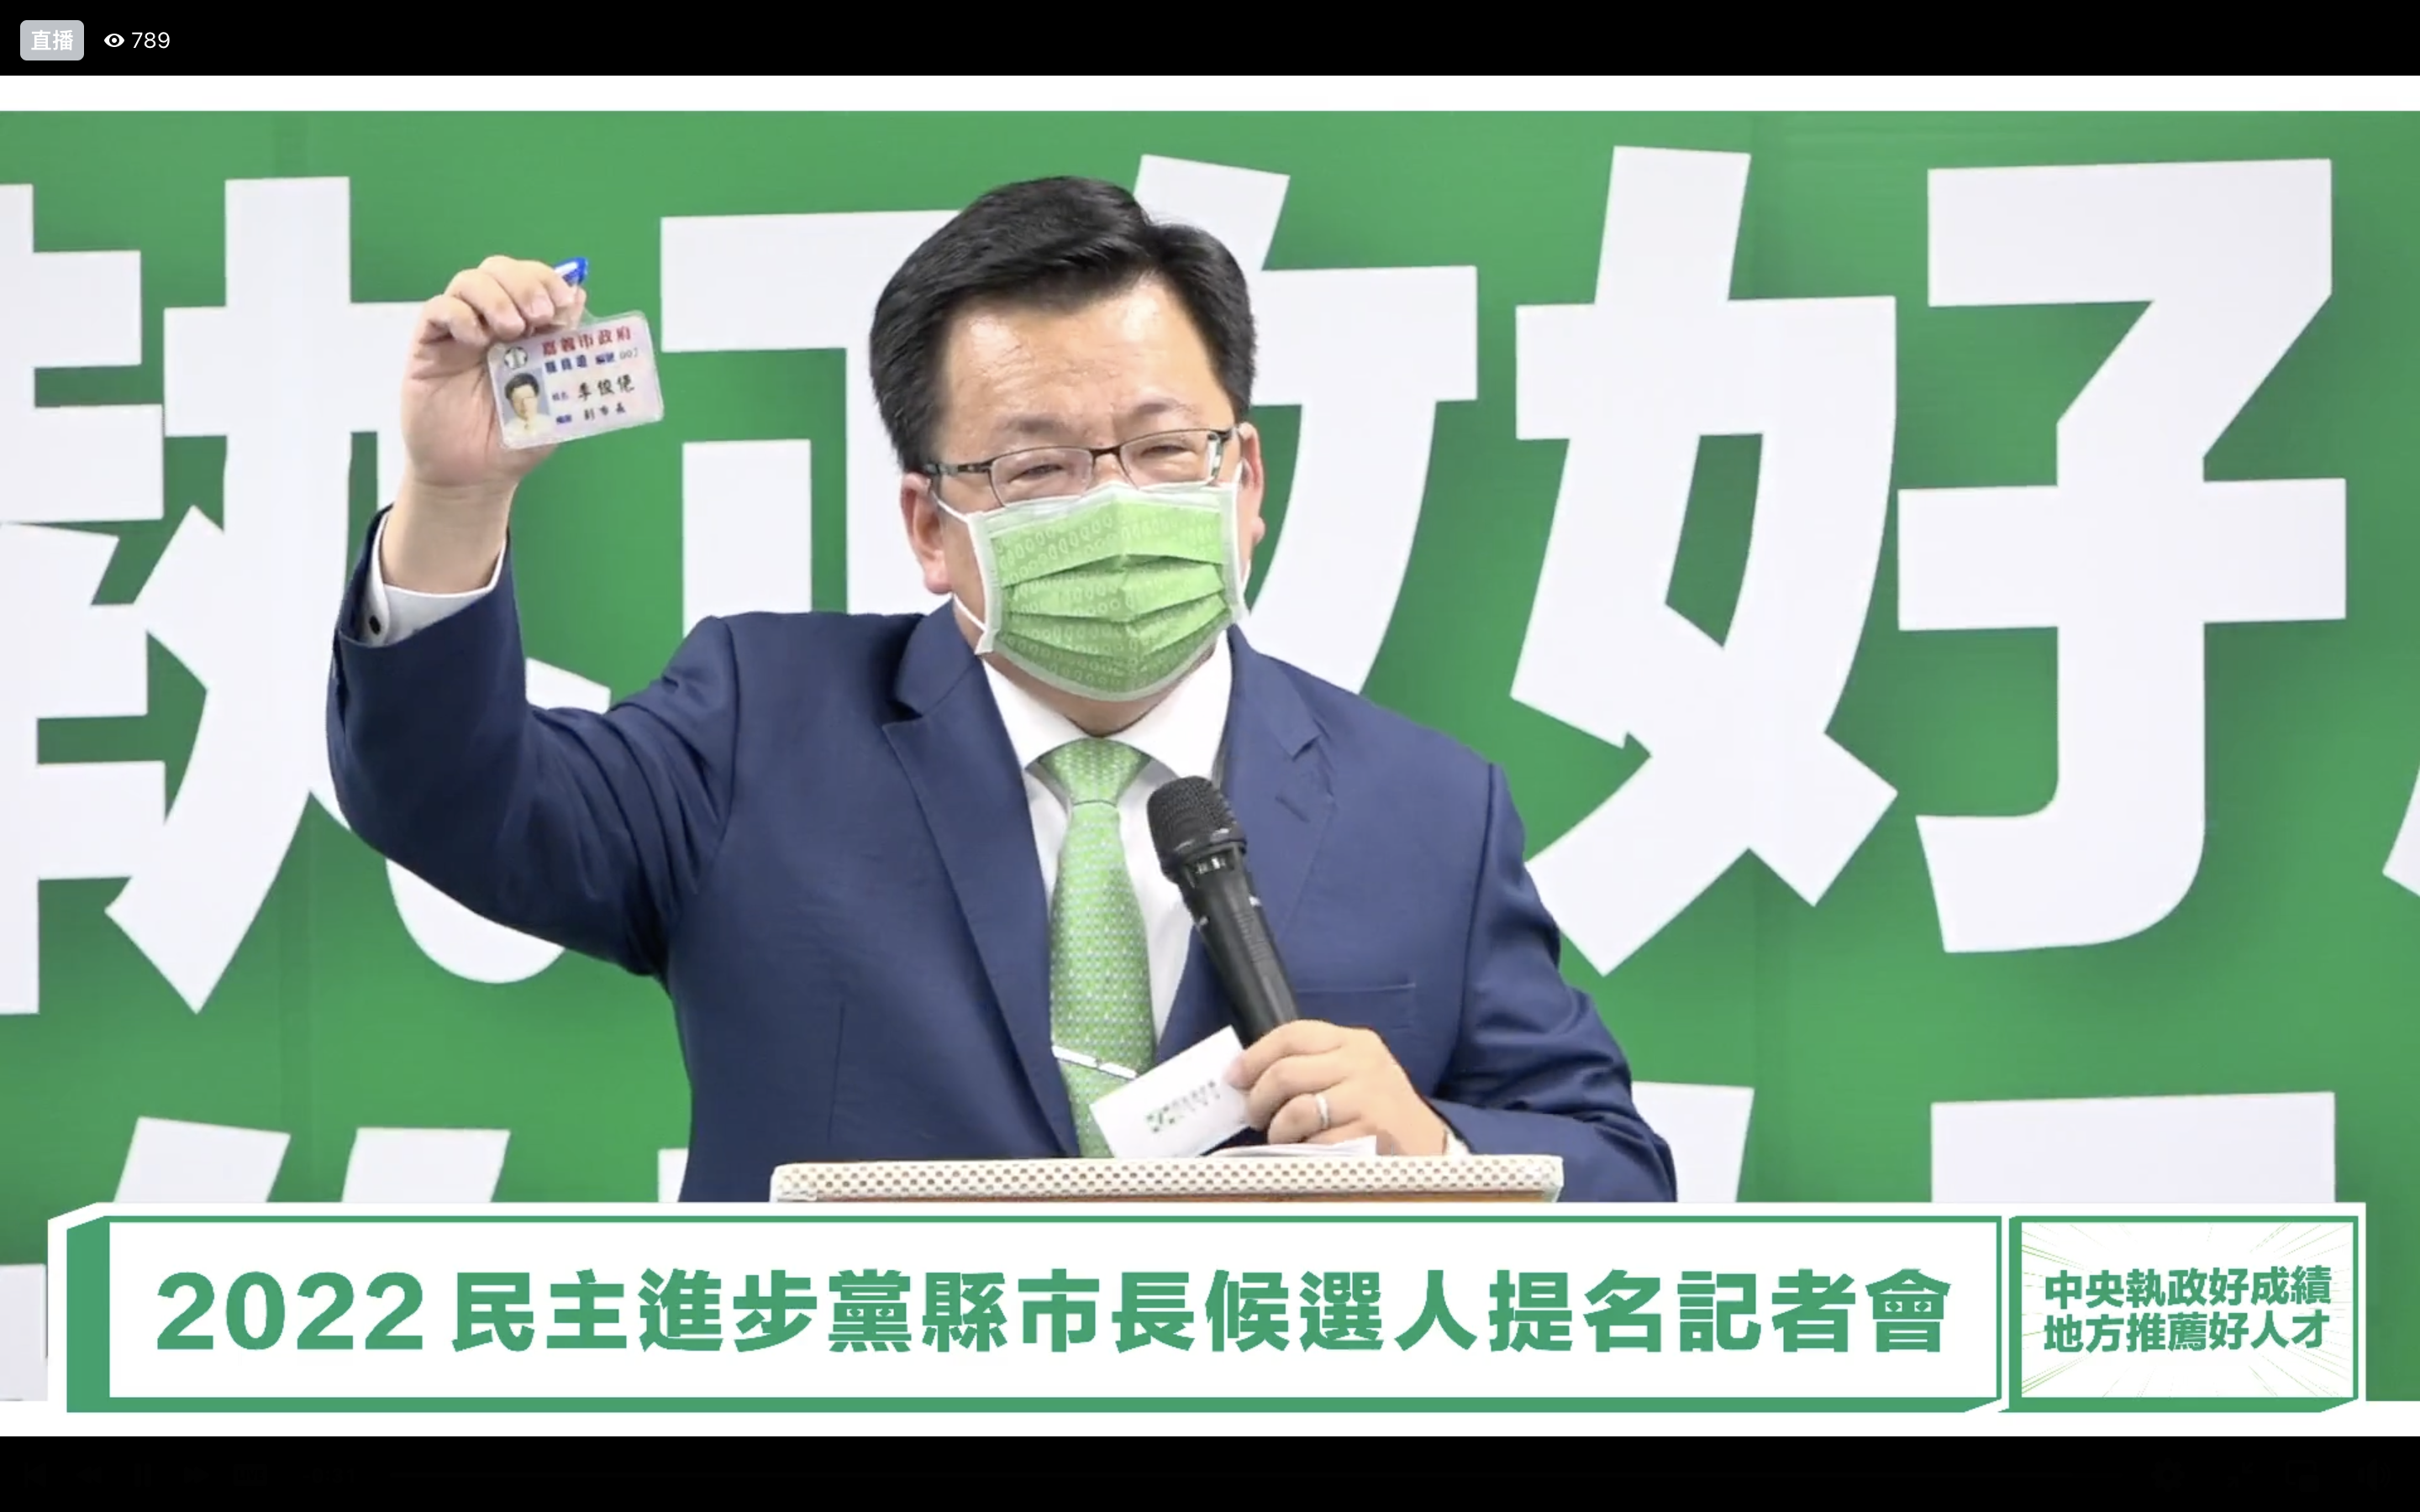 李俊俋秀出21年前擔任嘉義市副市長的職員證，強調會給嘉義不一樣的4年。翻攝民進黨臉書影片